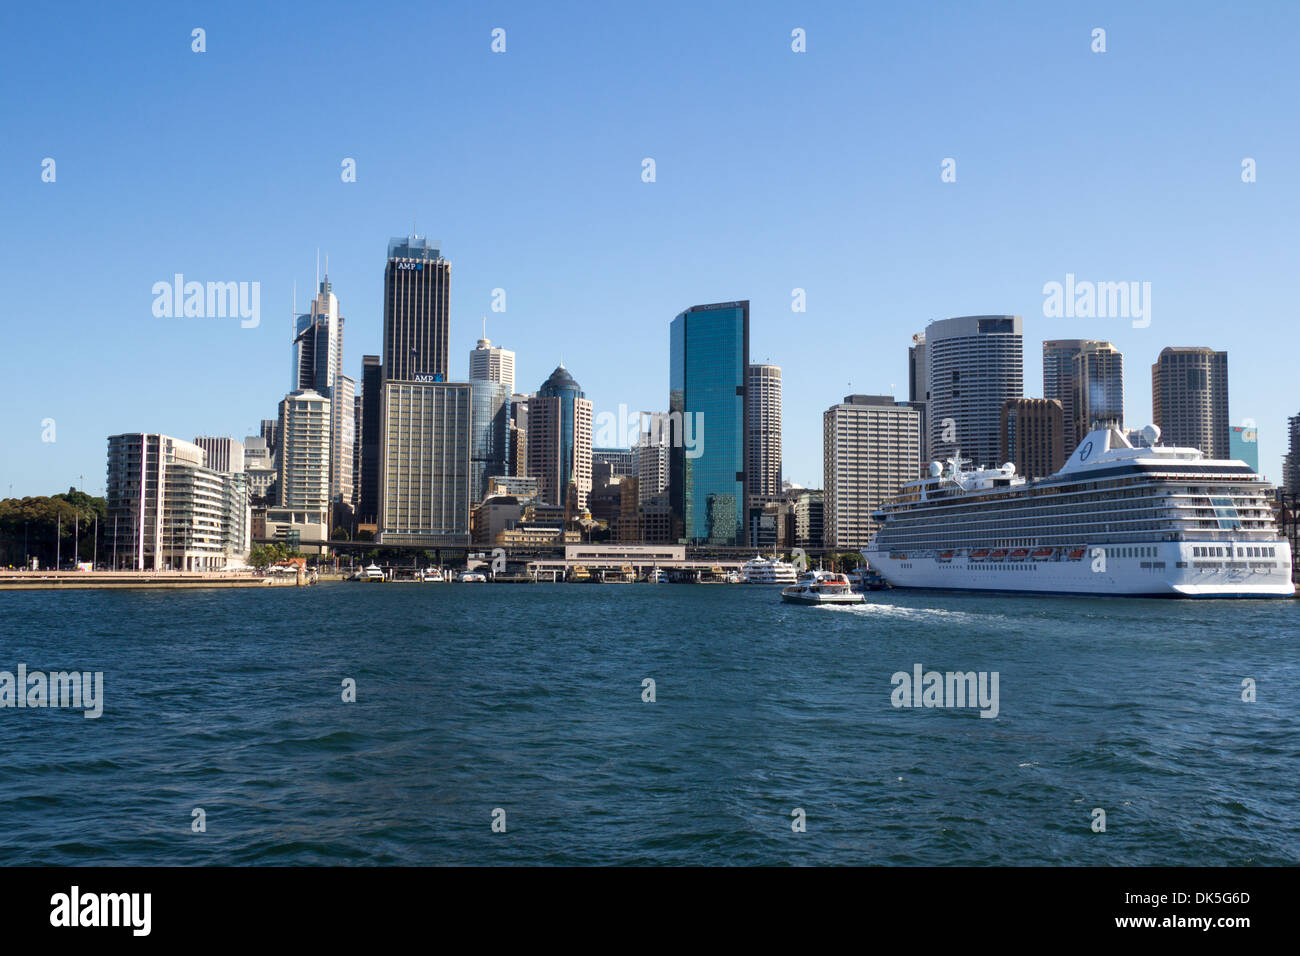 Sydney CBD (Central Business District) et bateau de croisière, New South Wales, NSW, Australie Banque D'Images